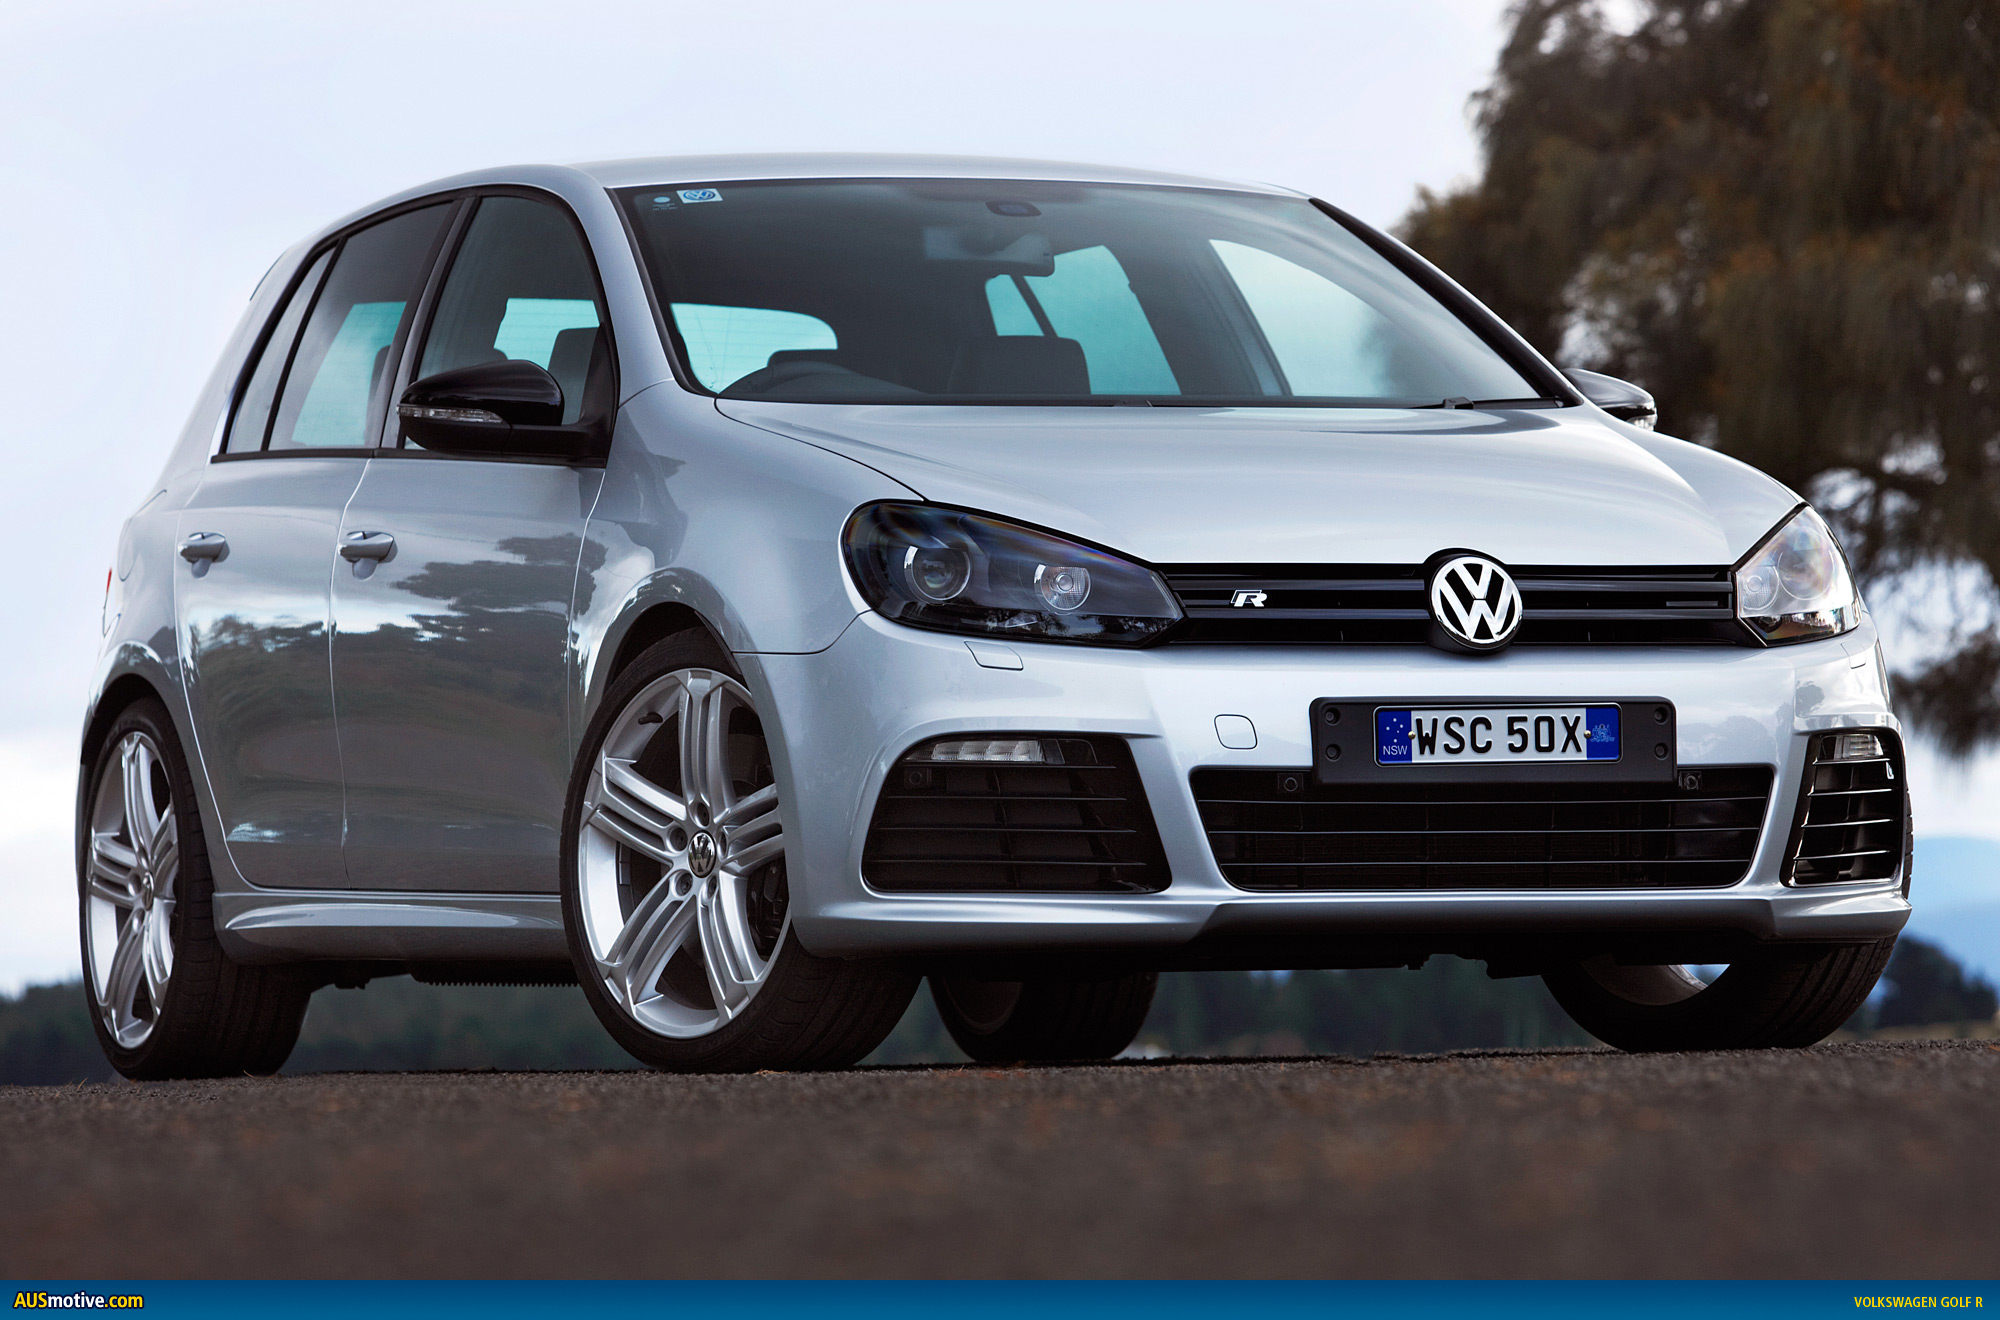 Volkswagen Golf R Australian specs & pricing